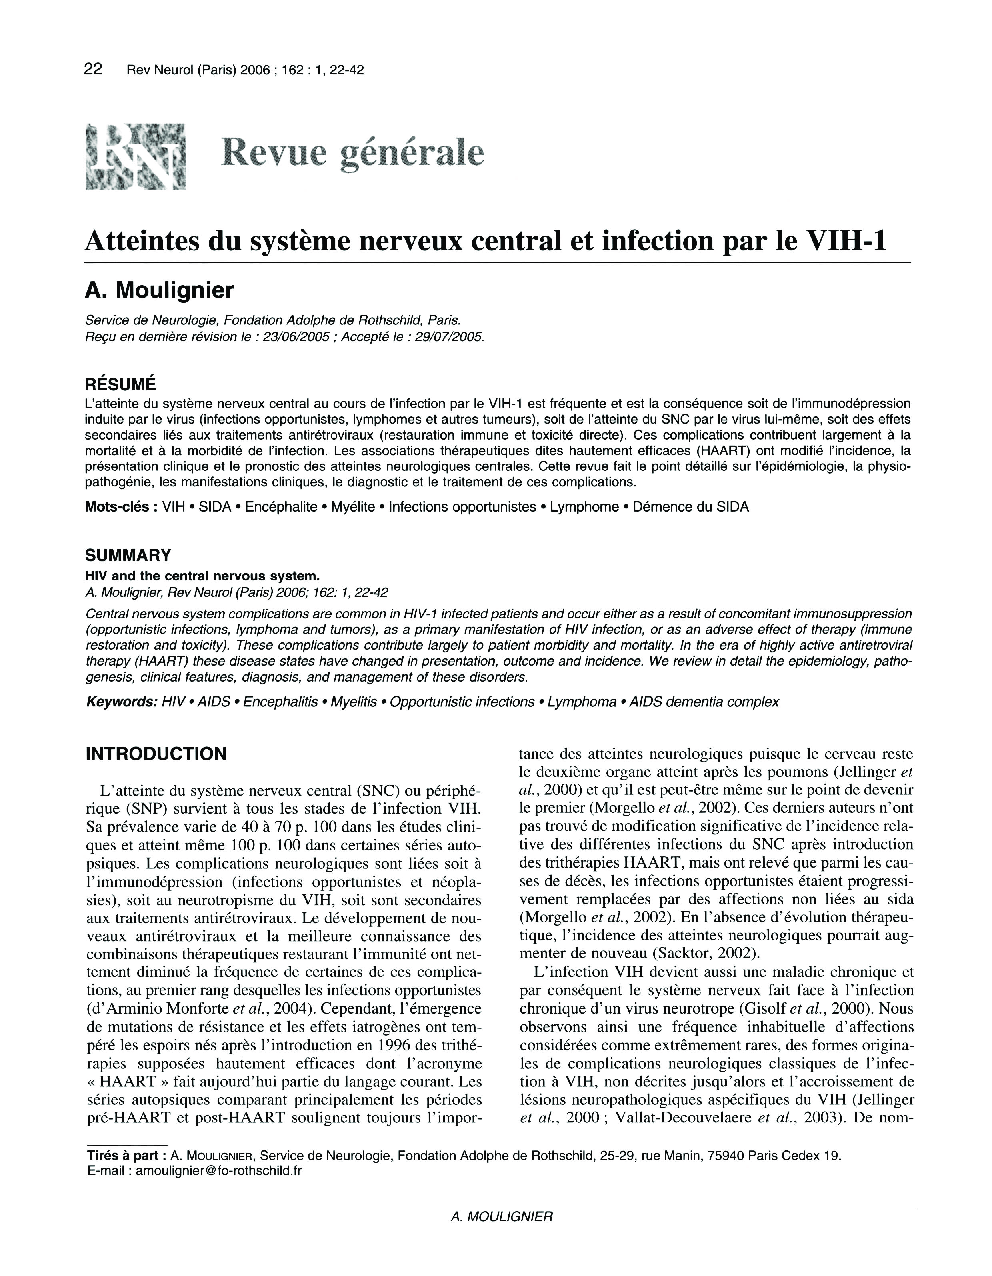 Atteintes du systÃ¨me nerveux central et infection par le VIH-1